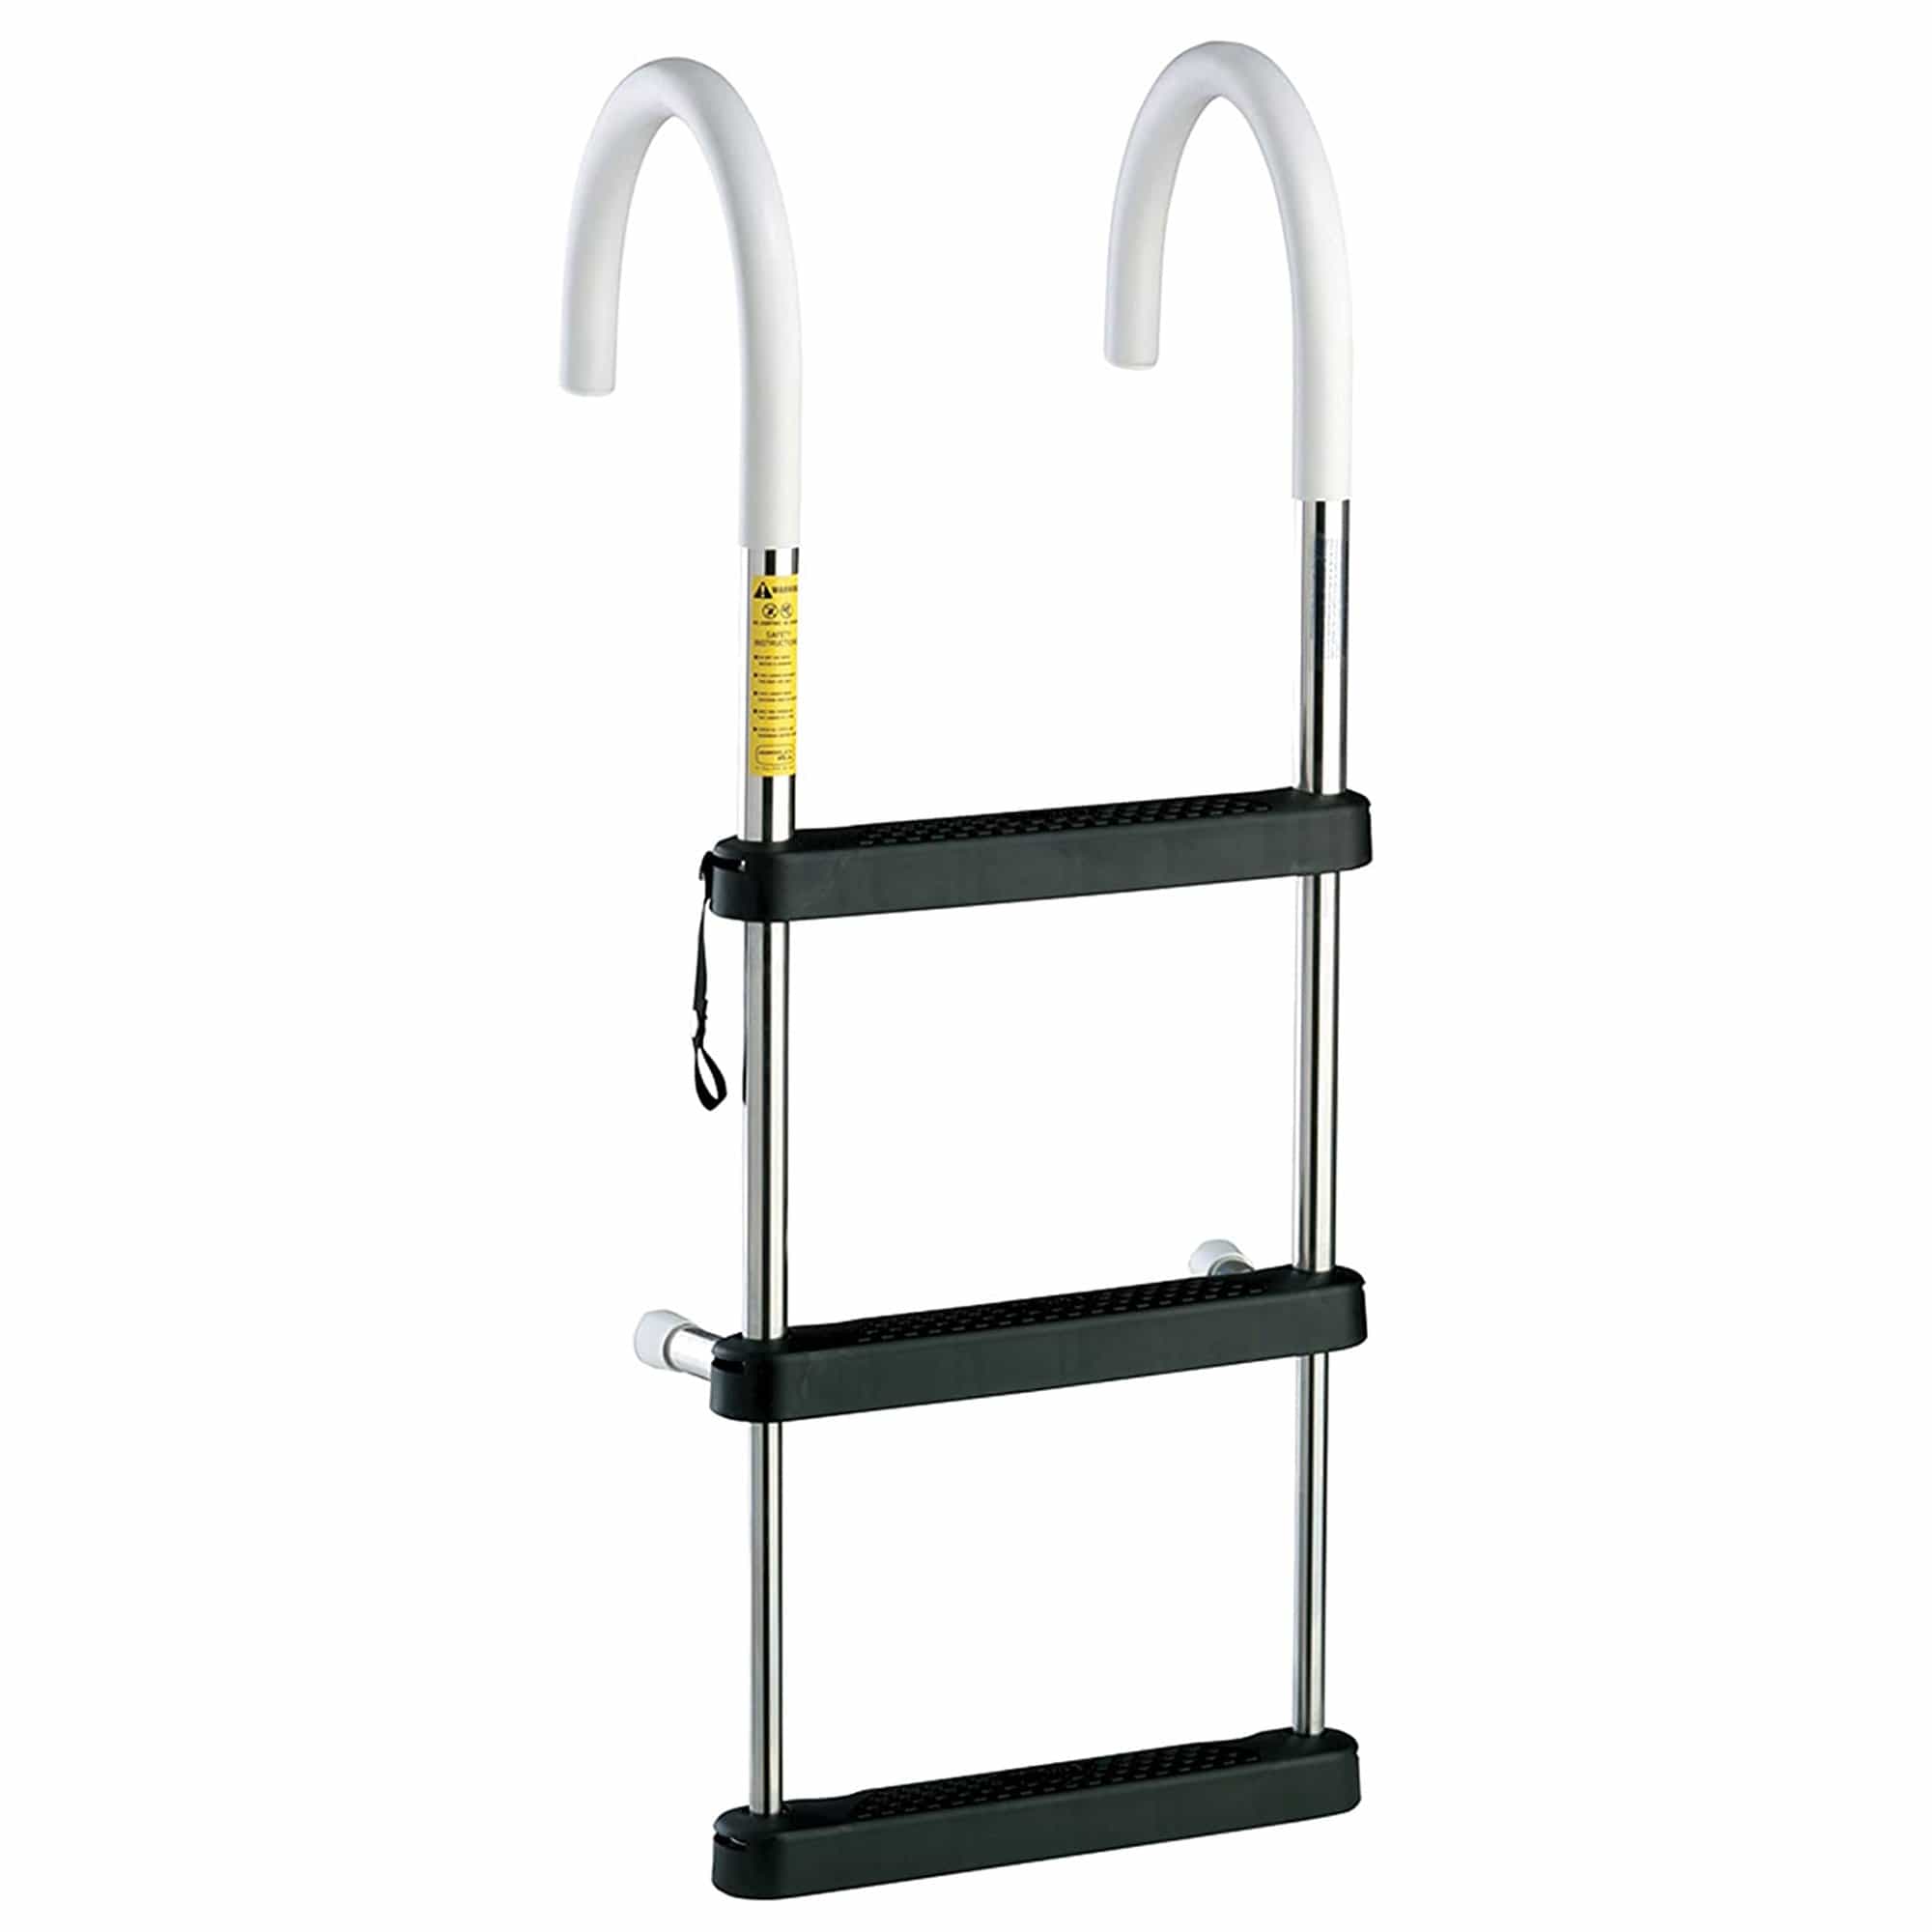 Garelick 06131 Eez-In Telescoping Hook Ladder